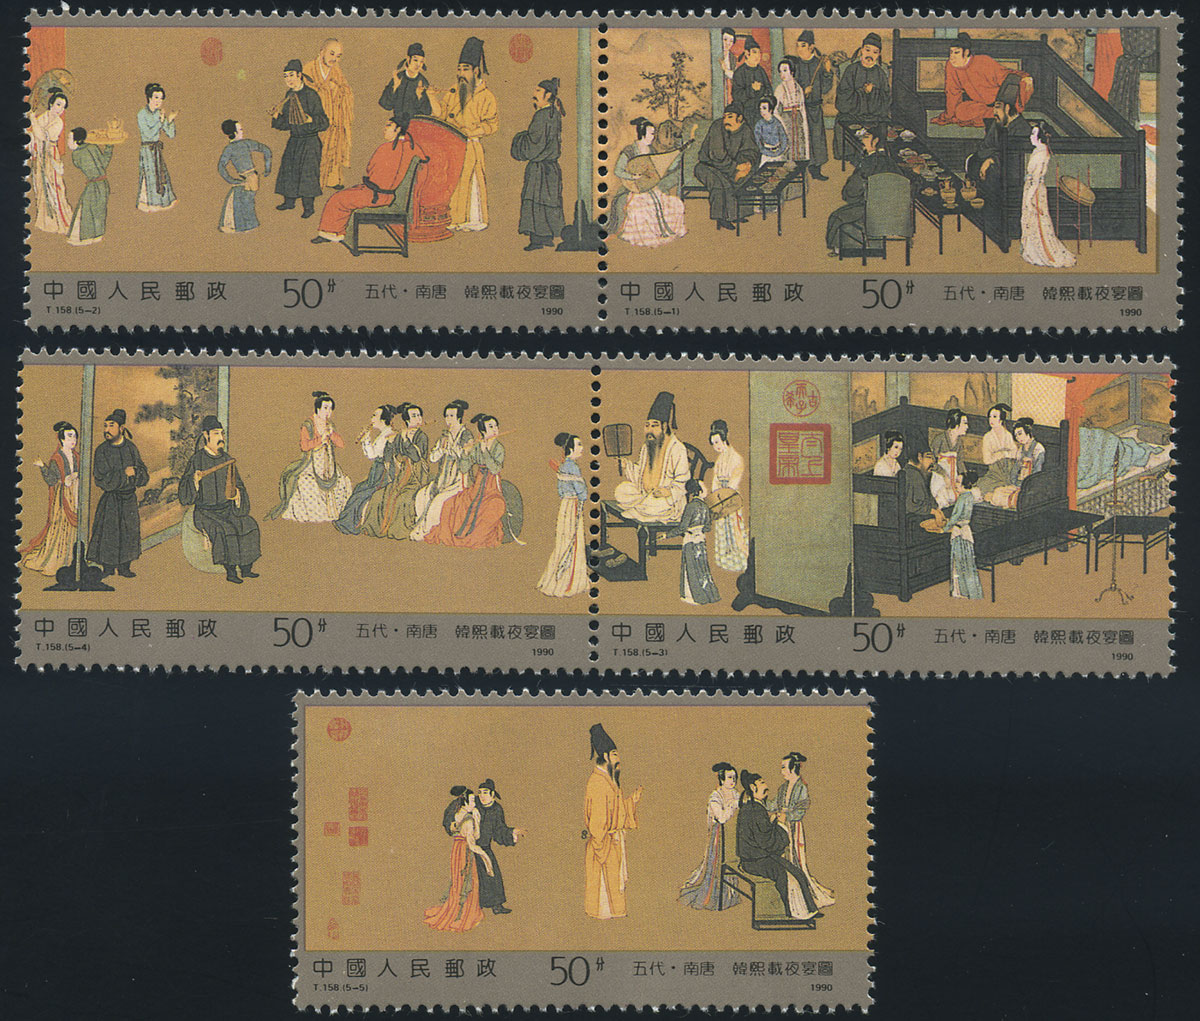 韓熙載夜宴圖(1990年12月20日中國發行郵票)